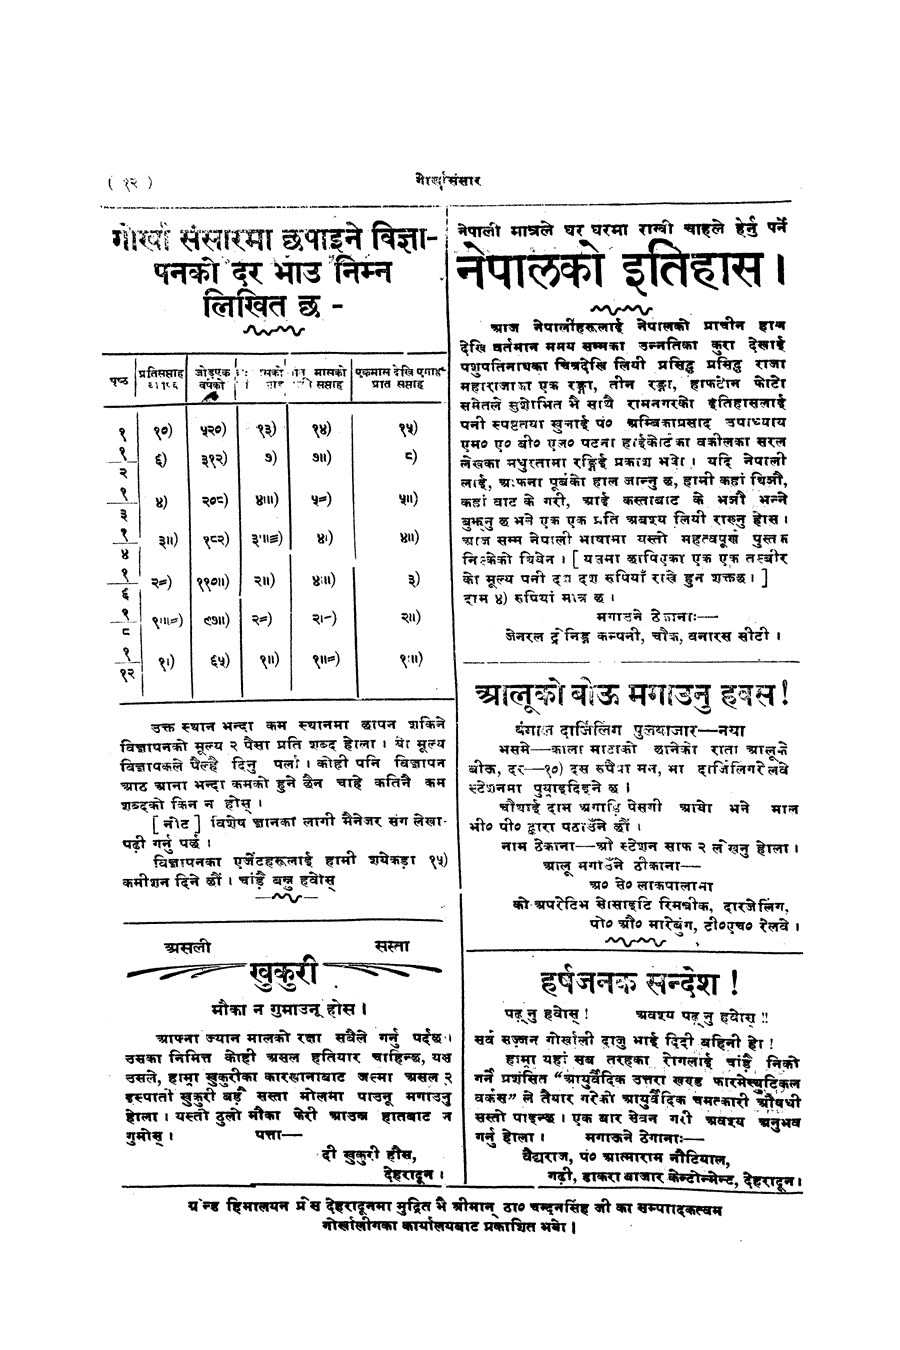 Gorkha Sansar, 15 Nov 1927, page 12